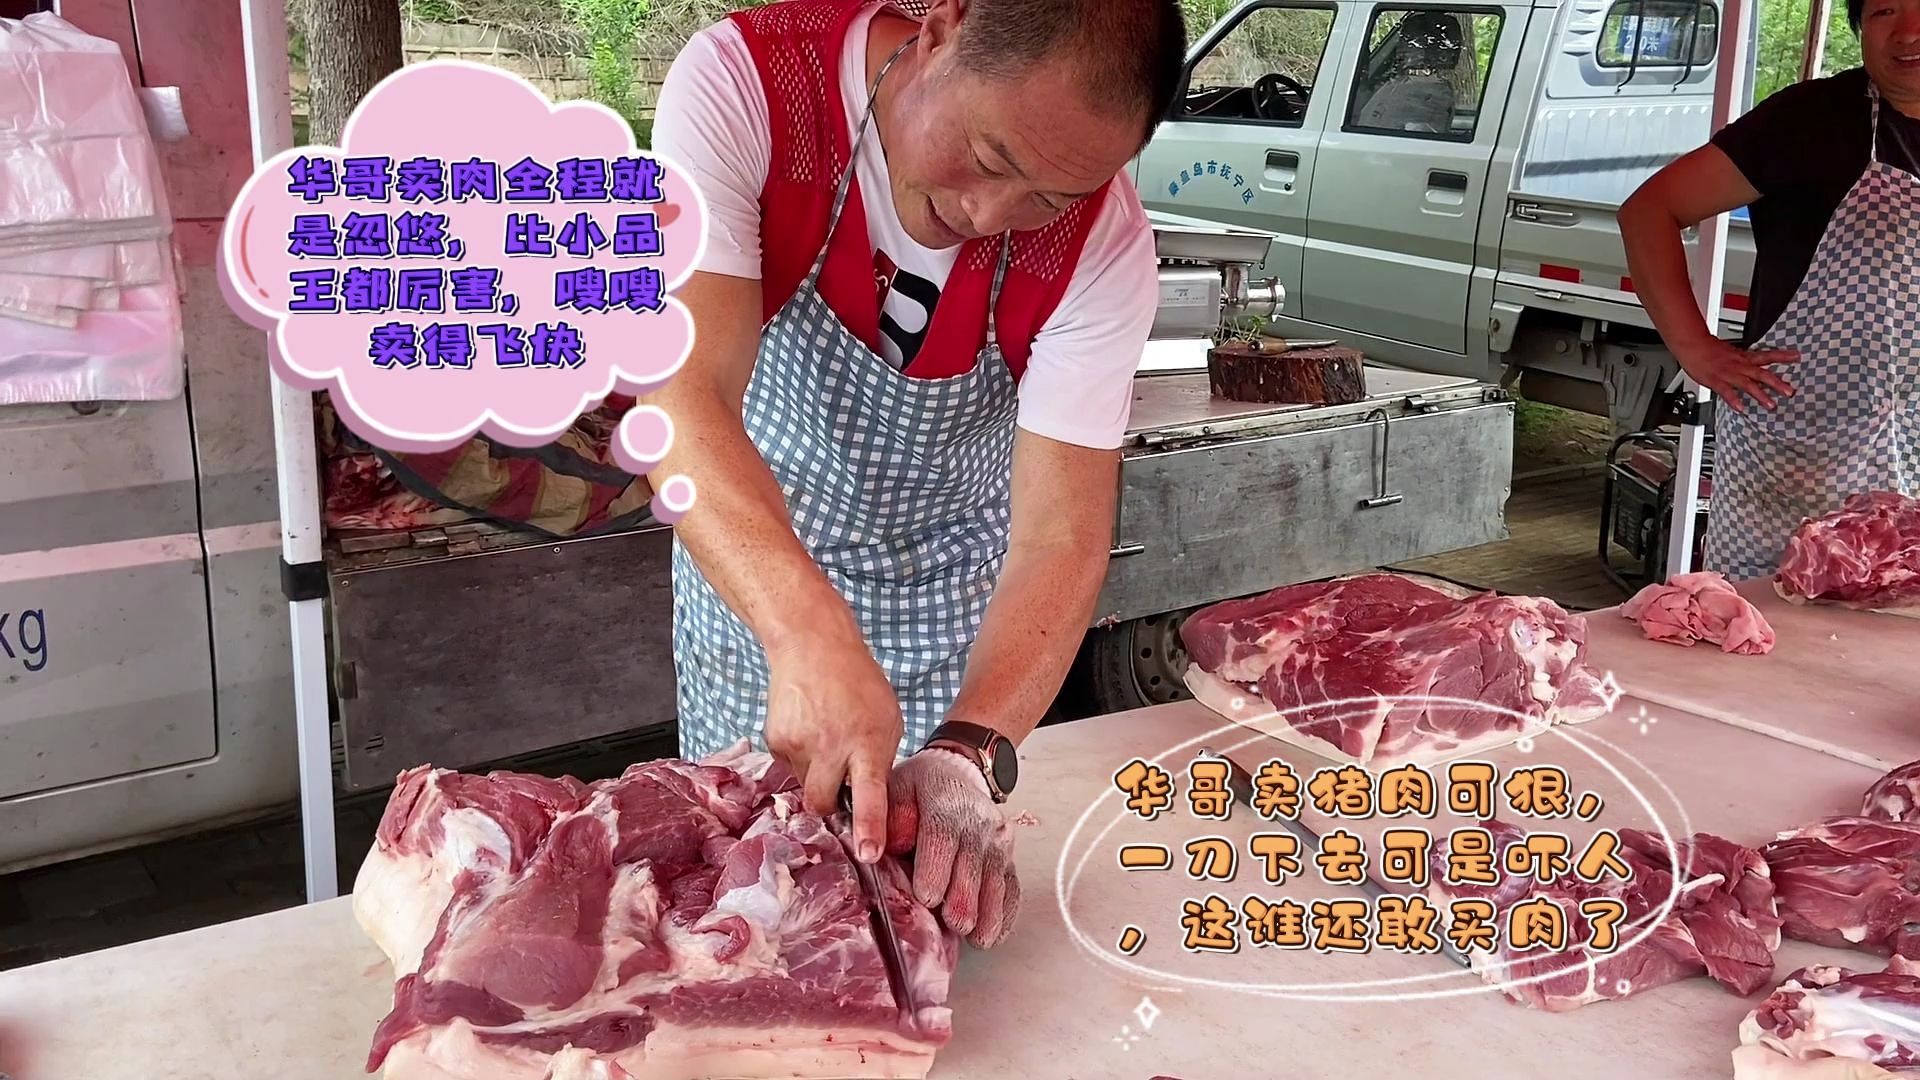 今天华哥卖猪肉挺狠,一刀下去看着吓人,看看咋回事?被吓傻了